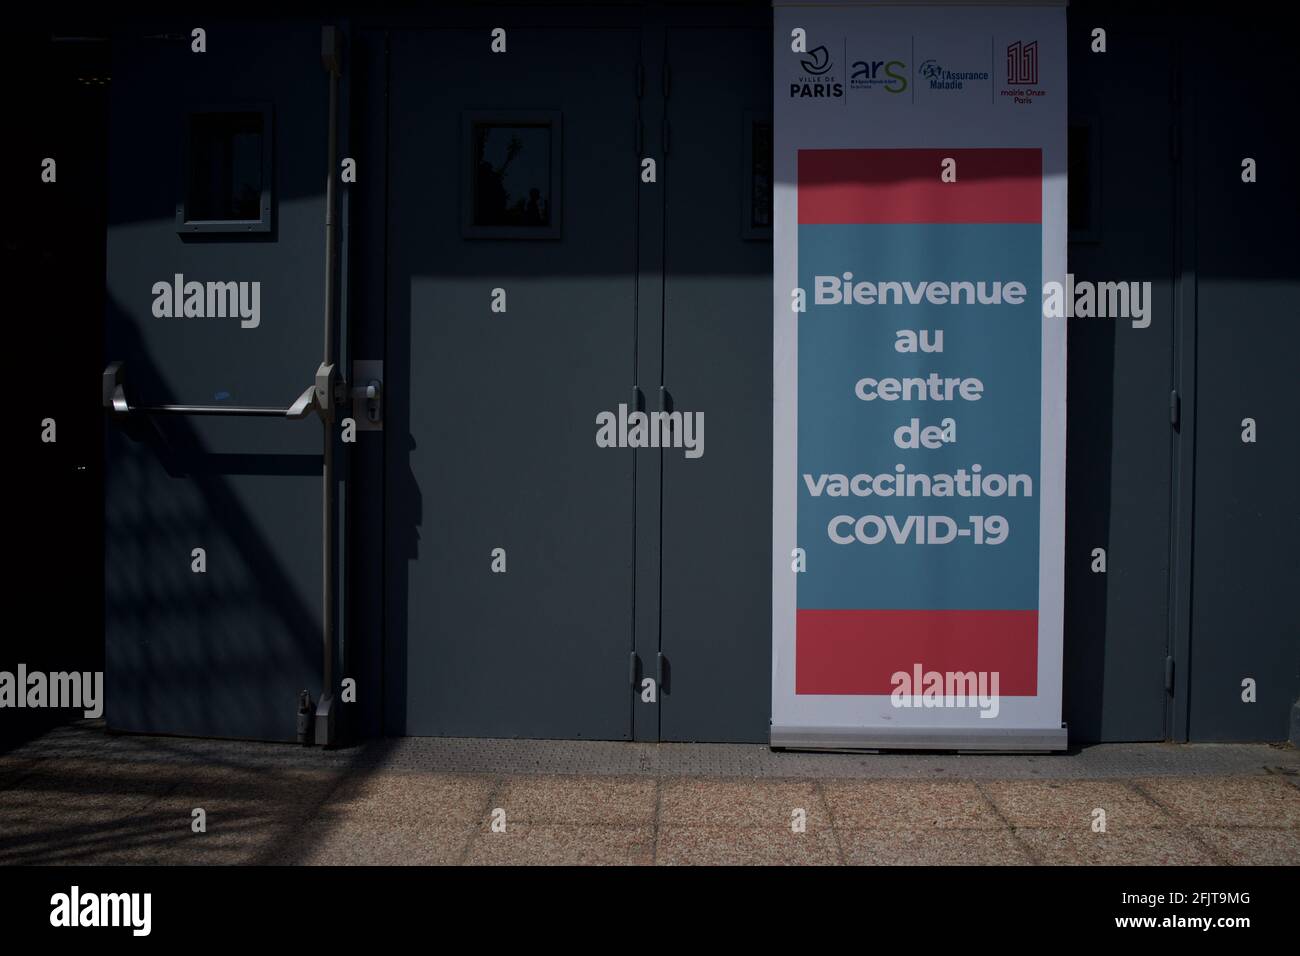 Centro de vacunación Covid-19, Salle Olympe de Gouges, Square de la Roquette, 15 Rue Merlin, 75011, París, Francia - abril, 2021 h - señal de bienvenida 'bienvenue' junto a la entrada Foto de stock